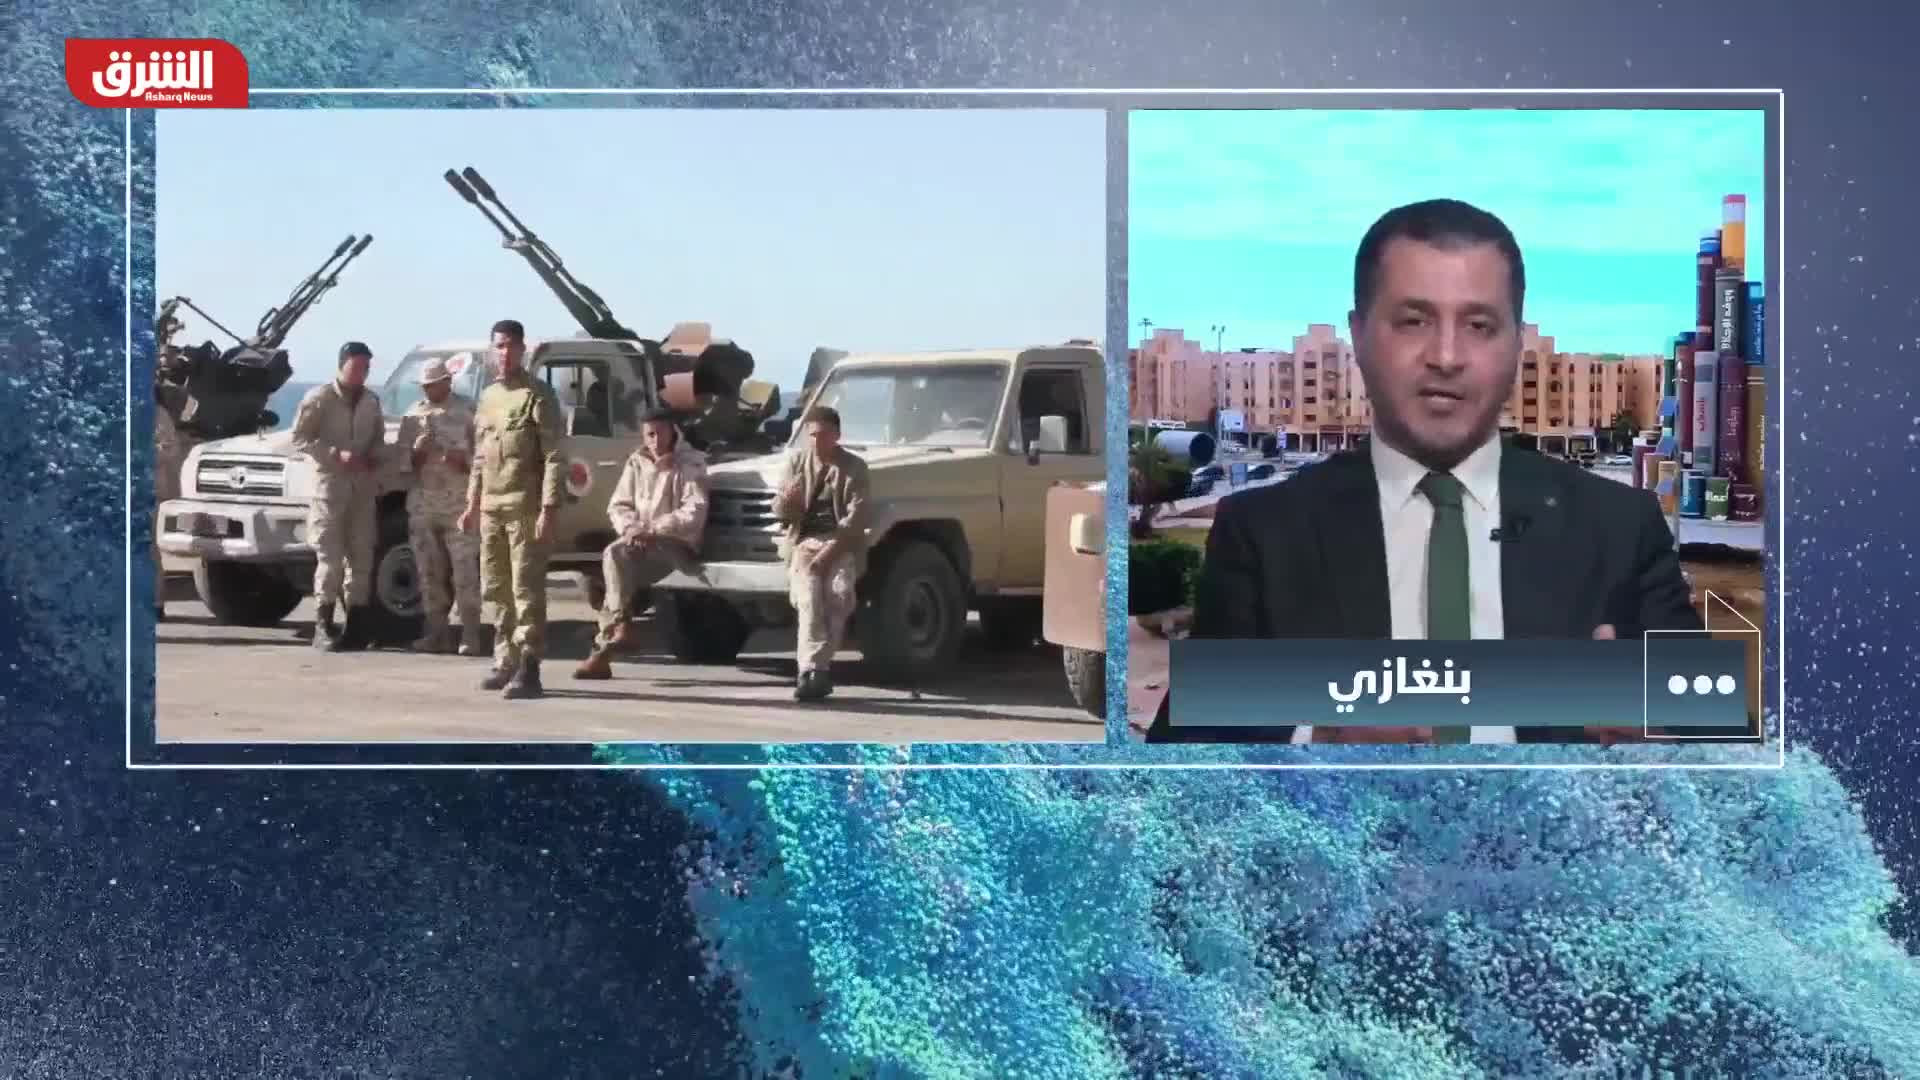 ما هي أسباب تعليق ممثلو الجيش الوطني الليبي  مشاركتهم في اللجنة العسكرية؟